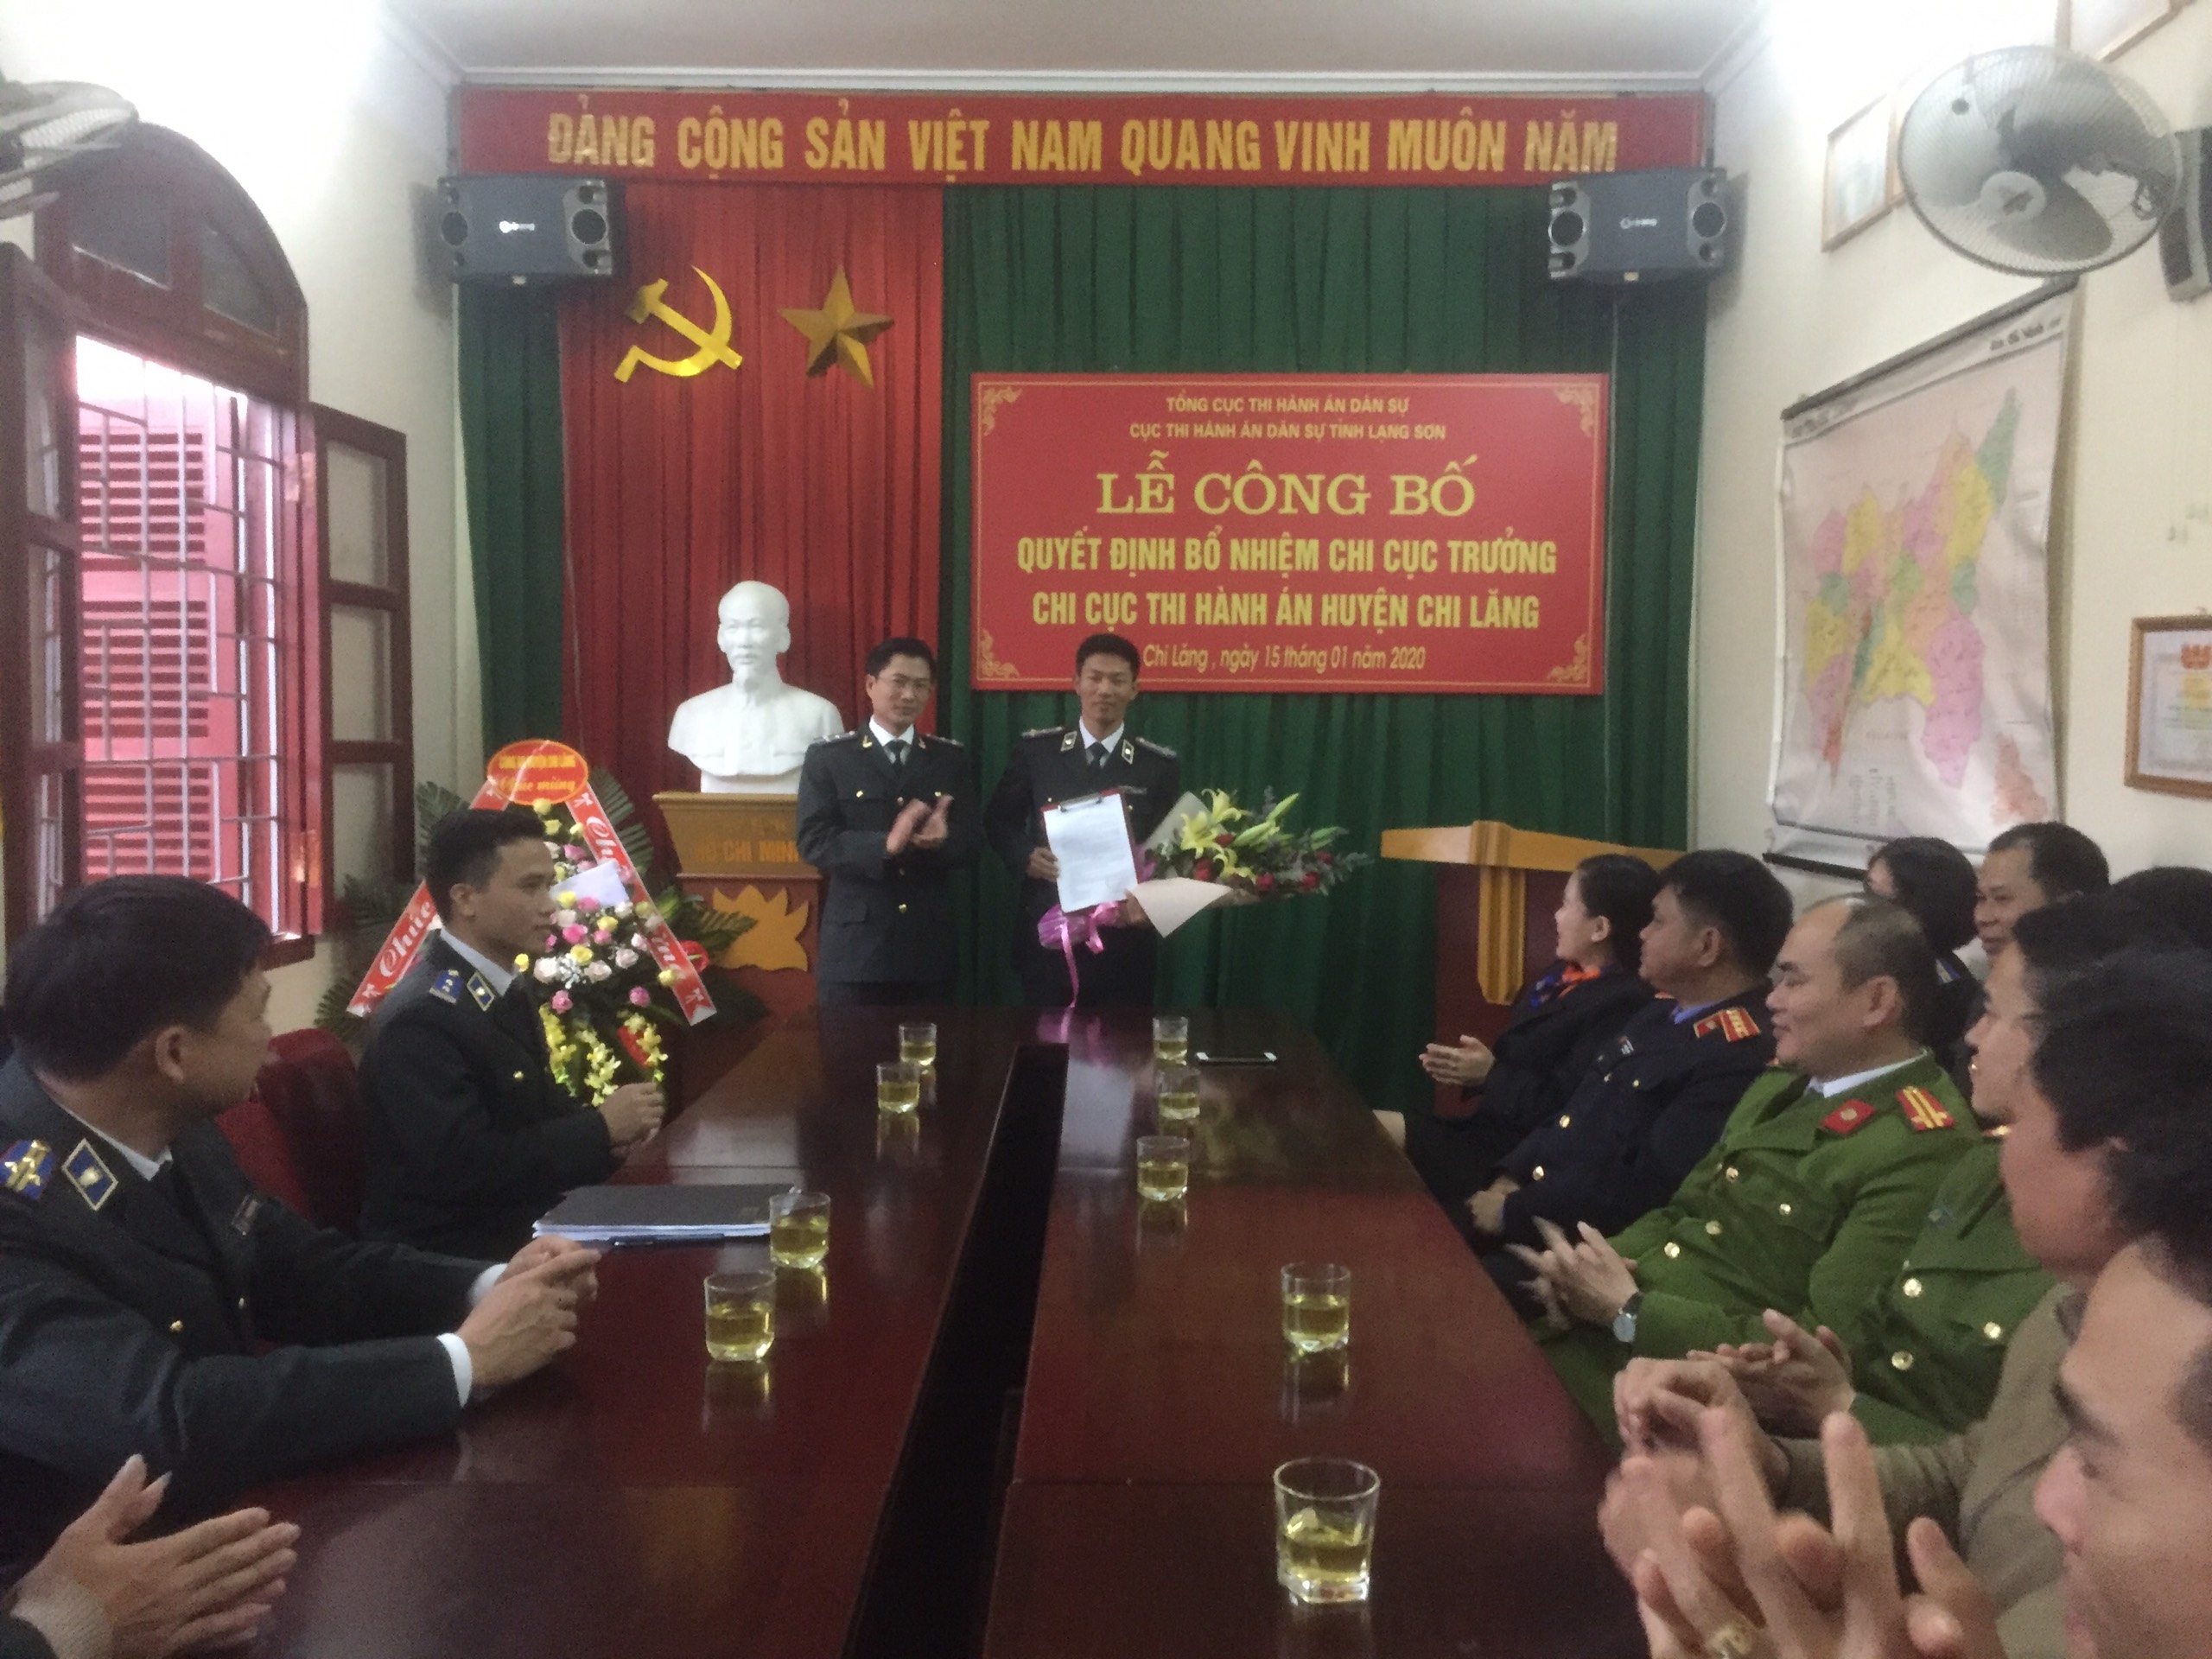 Cục THADS tỉnh Lạng Sơn tổ chức Lễ công bố Quyết định của Tổng cục trưởng về bổ nhiệm công chức lãnh đạo